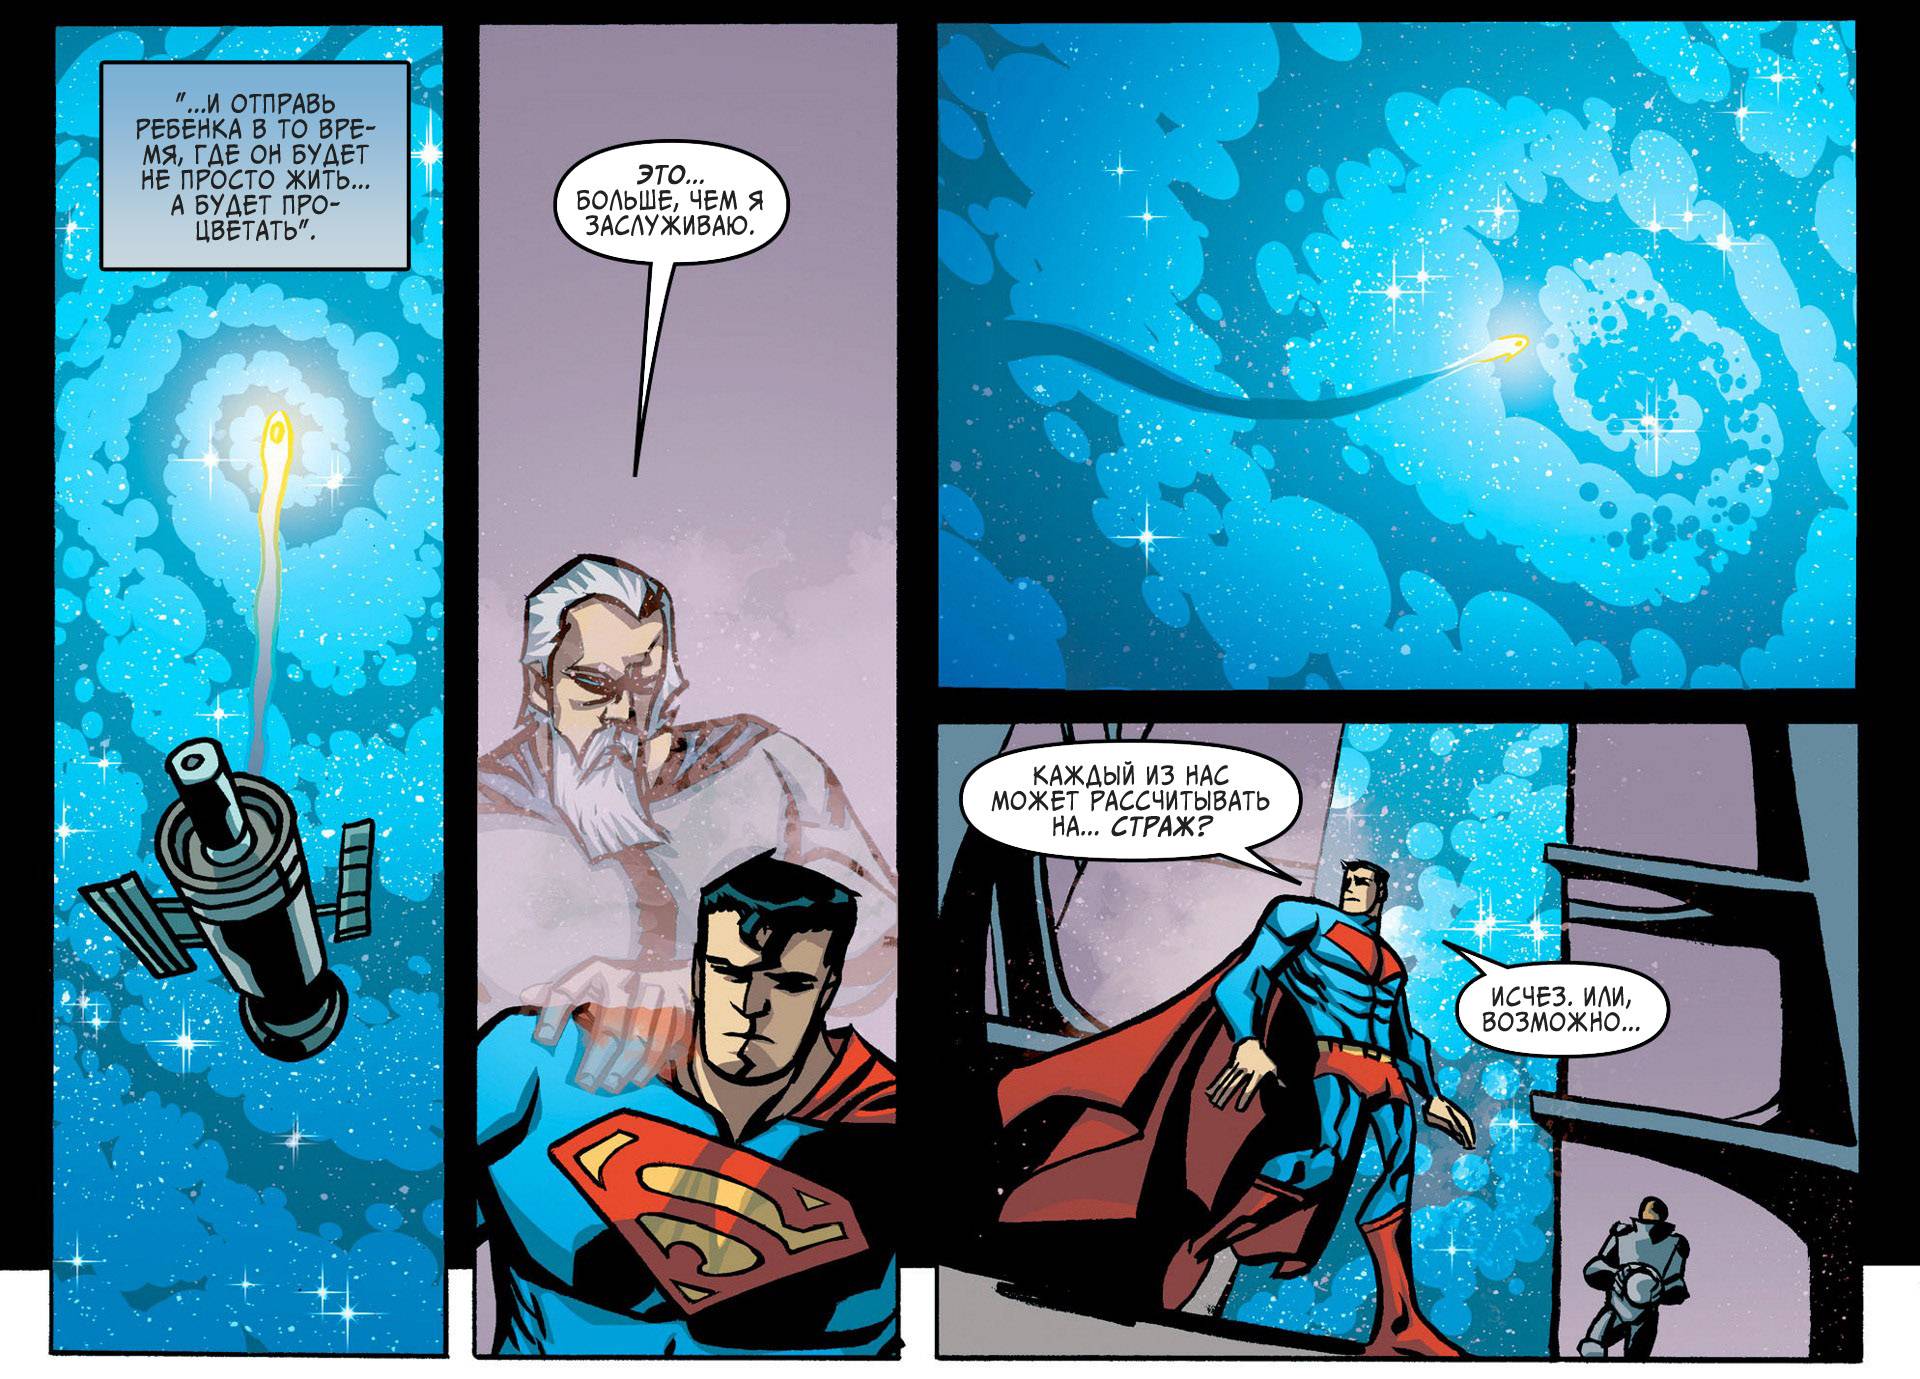 Приключения Супермена №6 онлайн